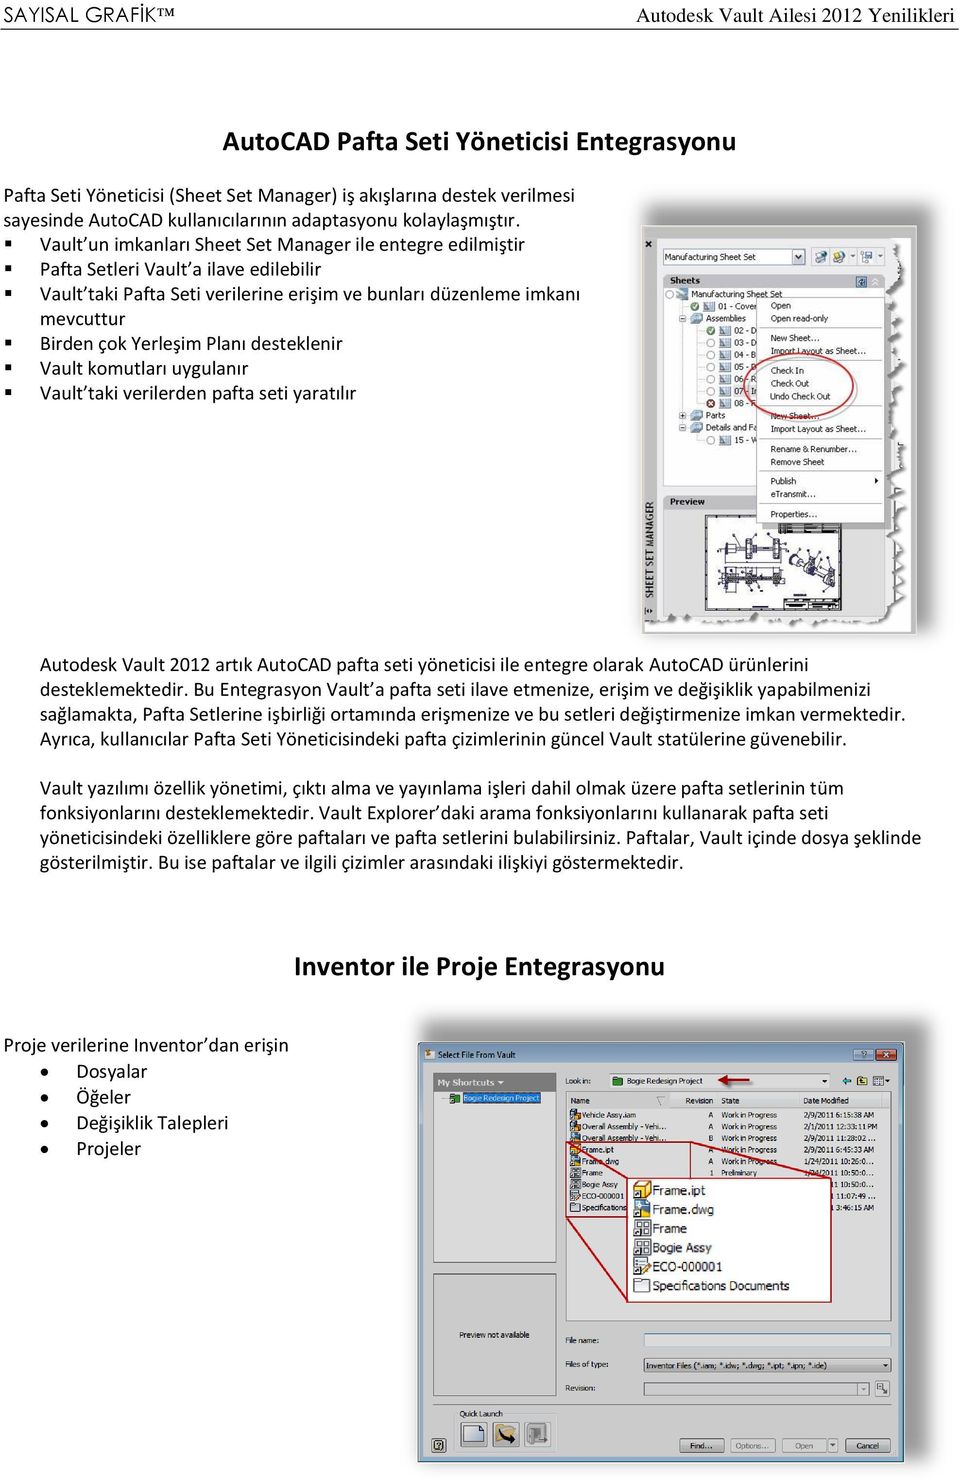 Planı desteklenir Vault komutları uygulanır Vault taki verilerden pafta seti yaratılır Autodesk Vault 2012 artık AutoCAD pafta seti yöneticisi ile entegre olarak AutoCAD ürünlerini desteklemektedir.